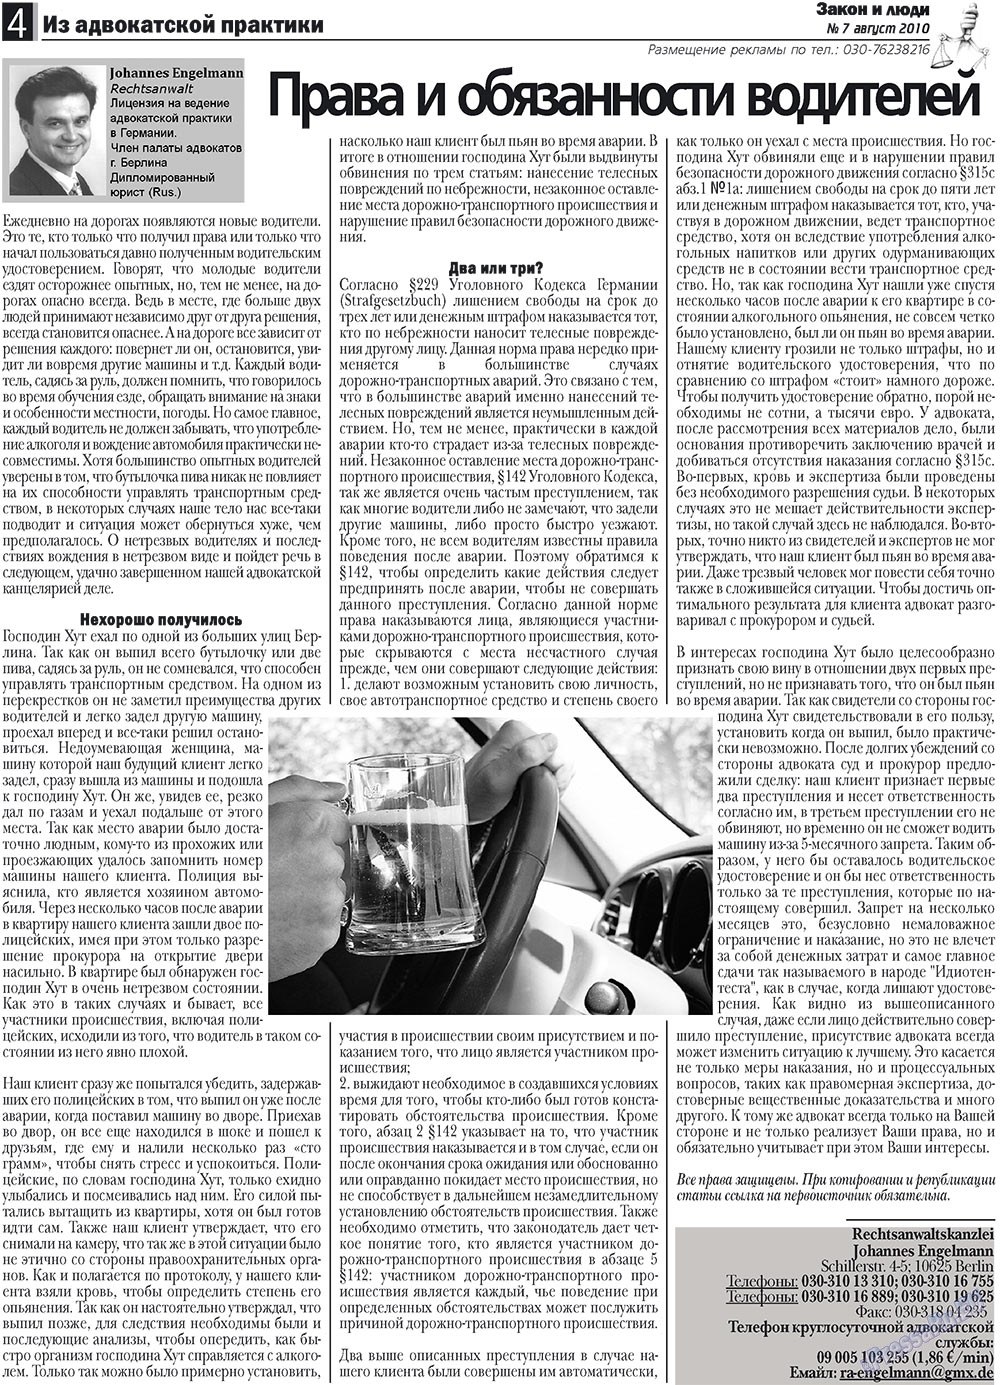 Закон и люди, газета. 2010 №7 стр.4